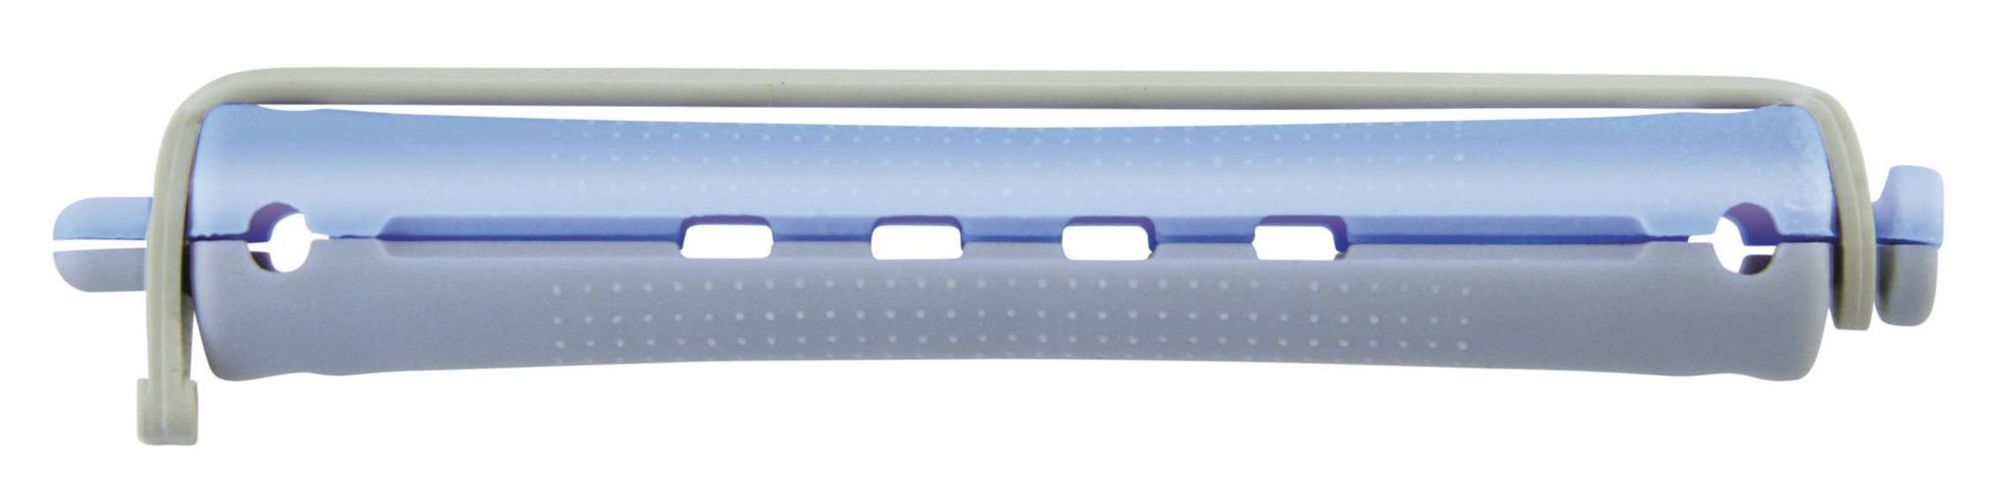 Comair Permanentwikkels lang grijs/blauw 13mm 12 stuks